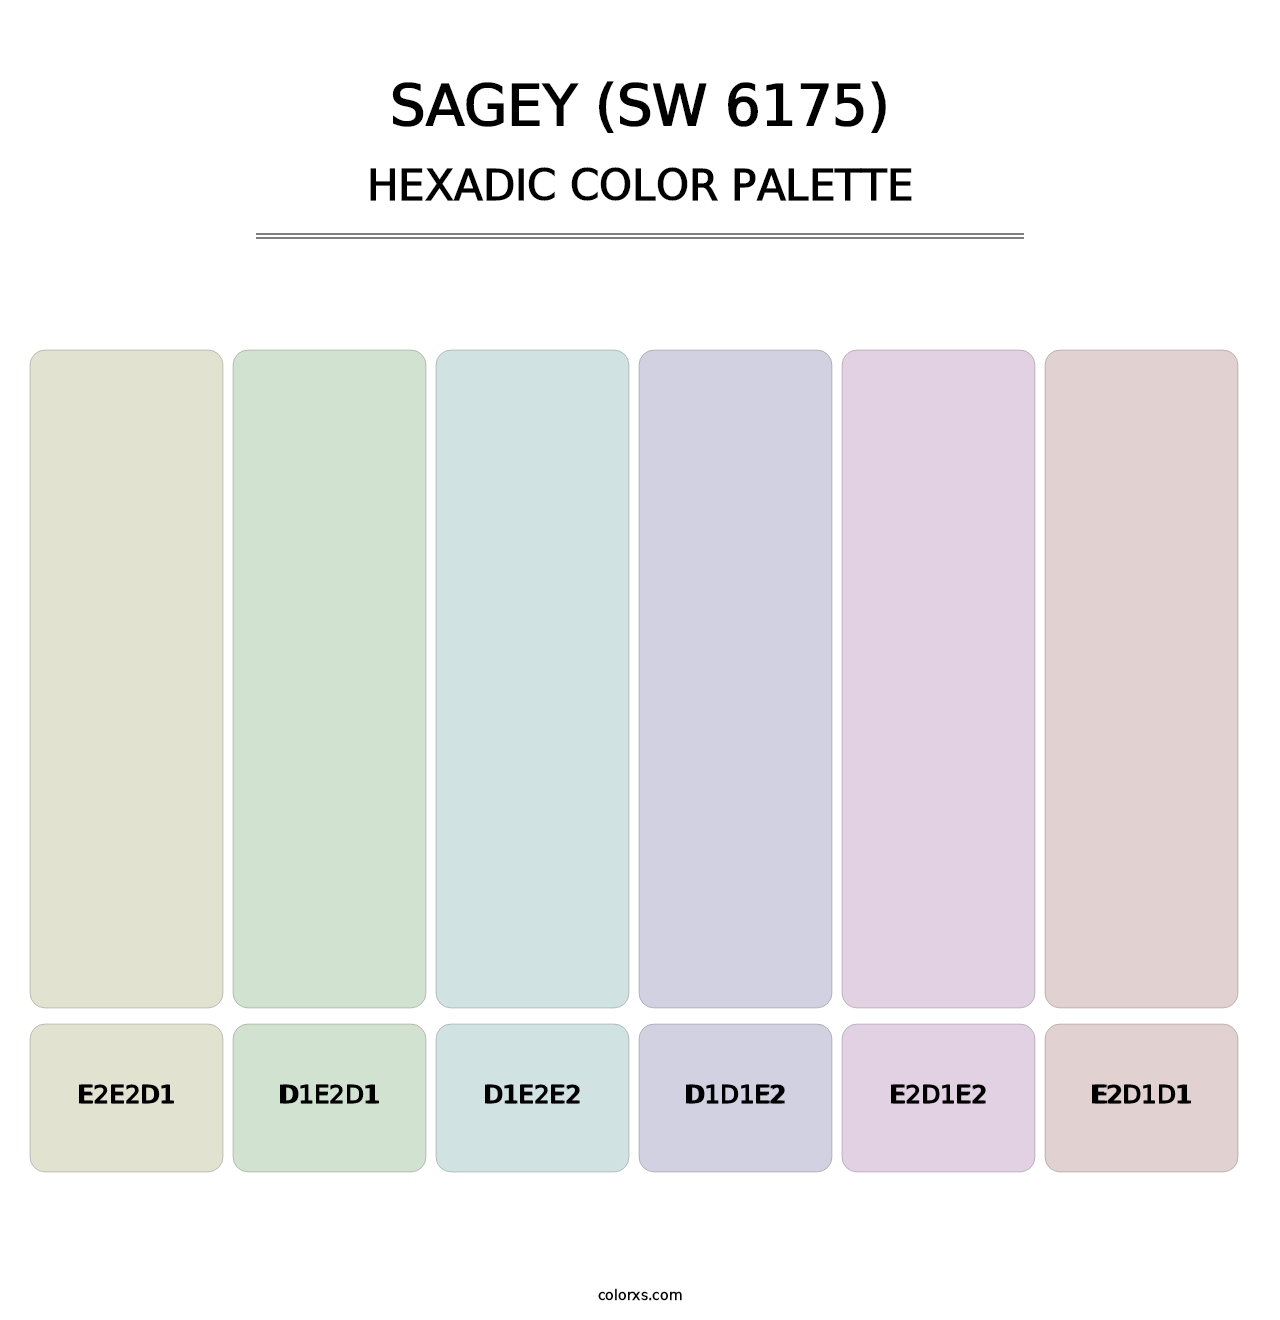 Sagey (SW 6175) - Hexadic Color Palette